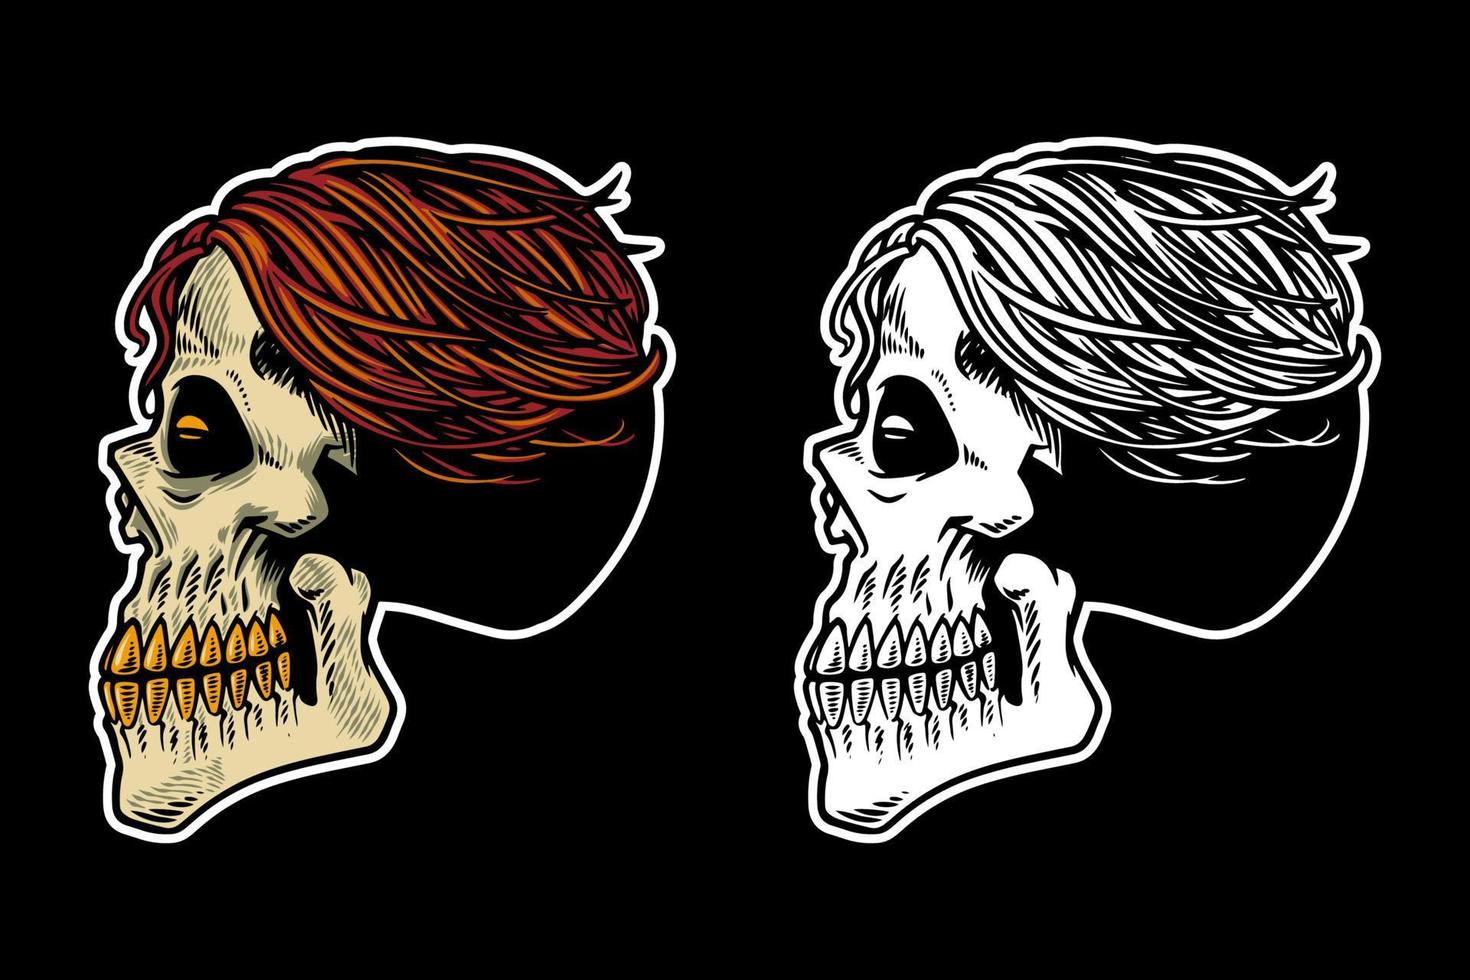 tête de crâne dessinée à la main avec illustration vectorielle de cheveux cool vecteur